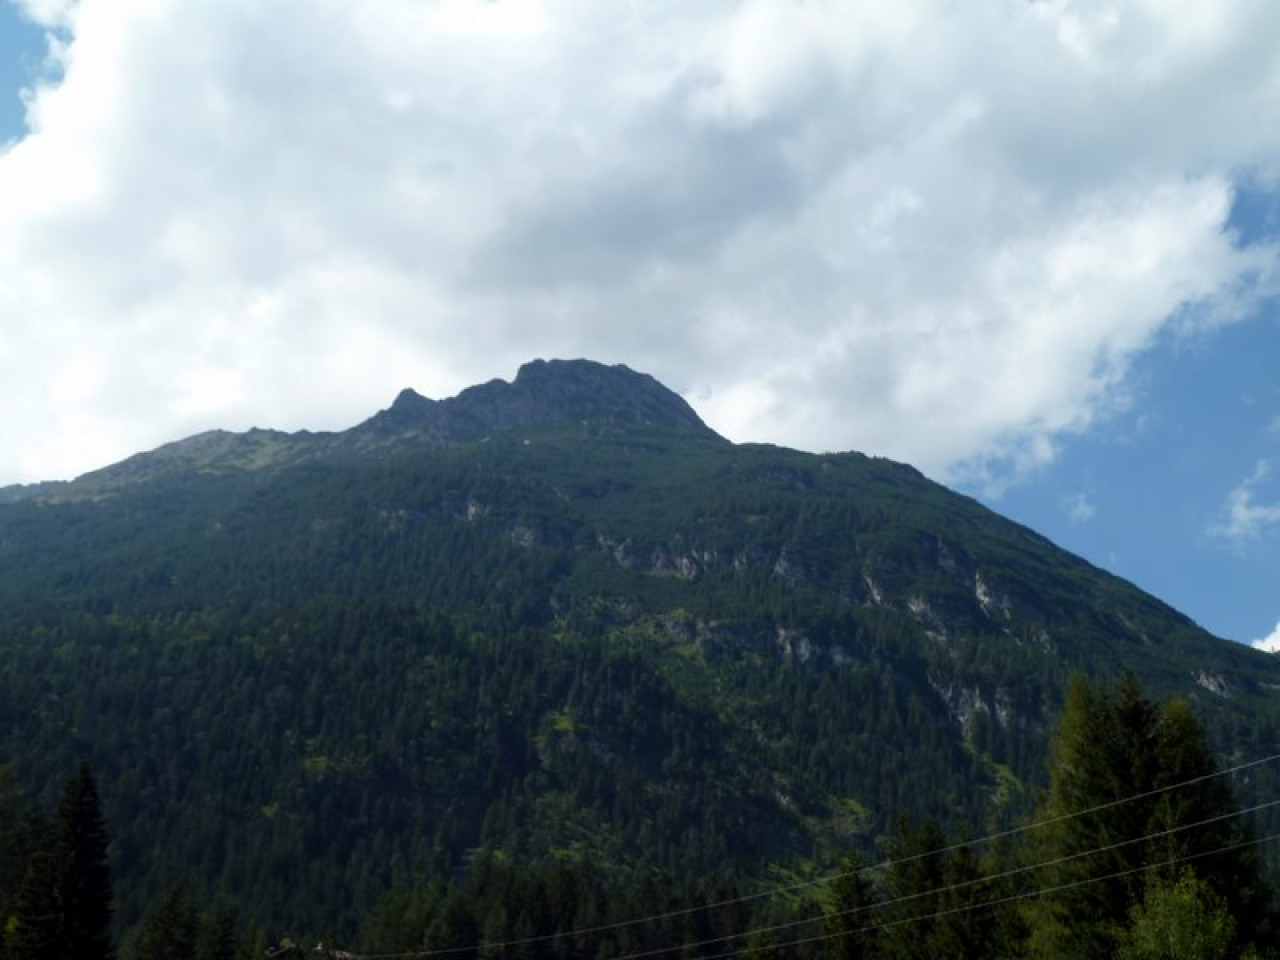  Grubachspitze